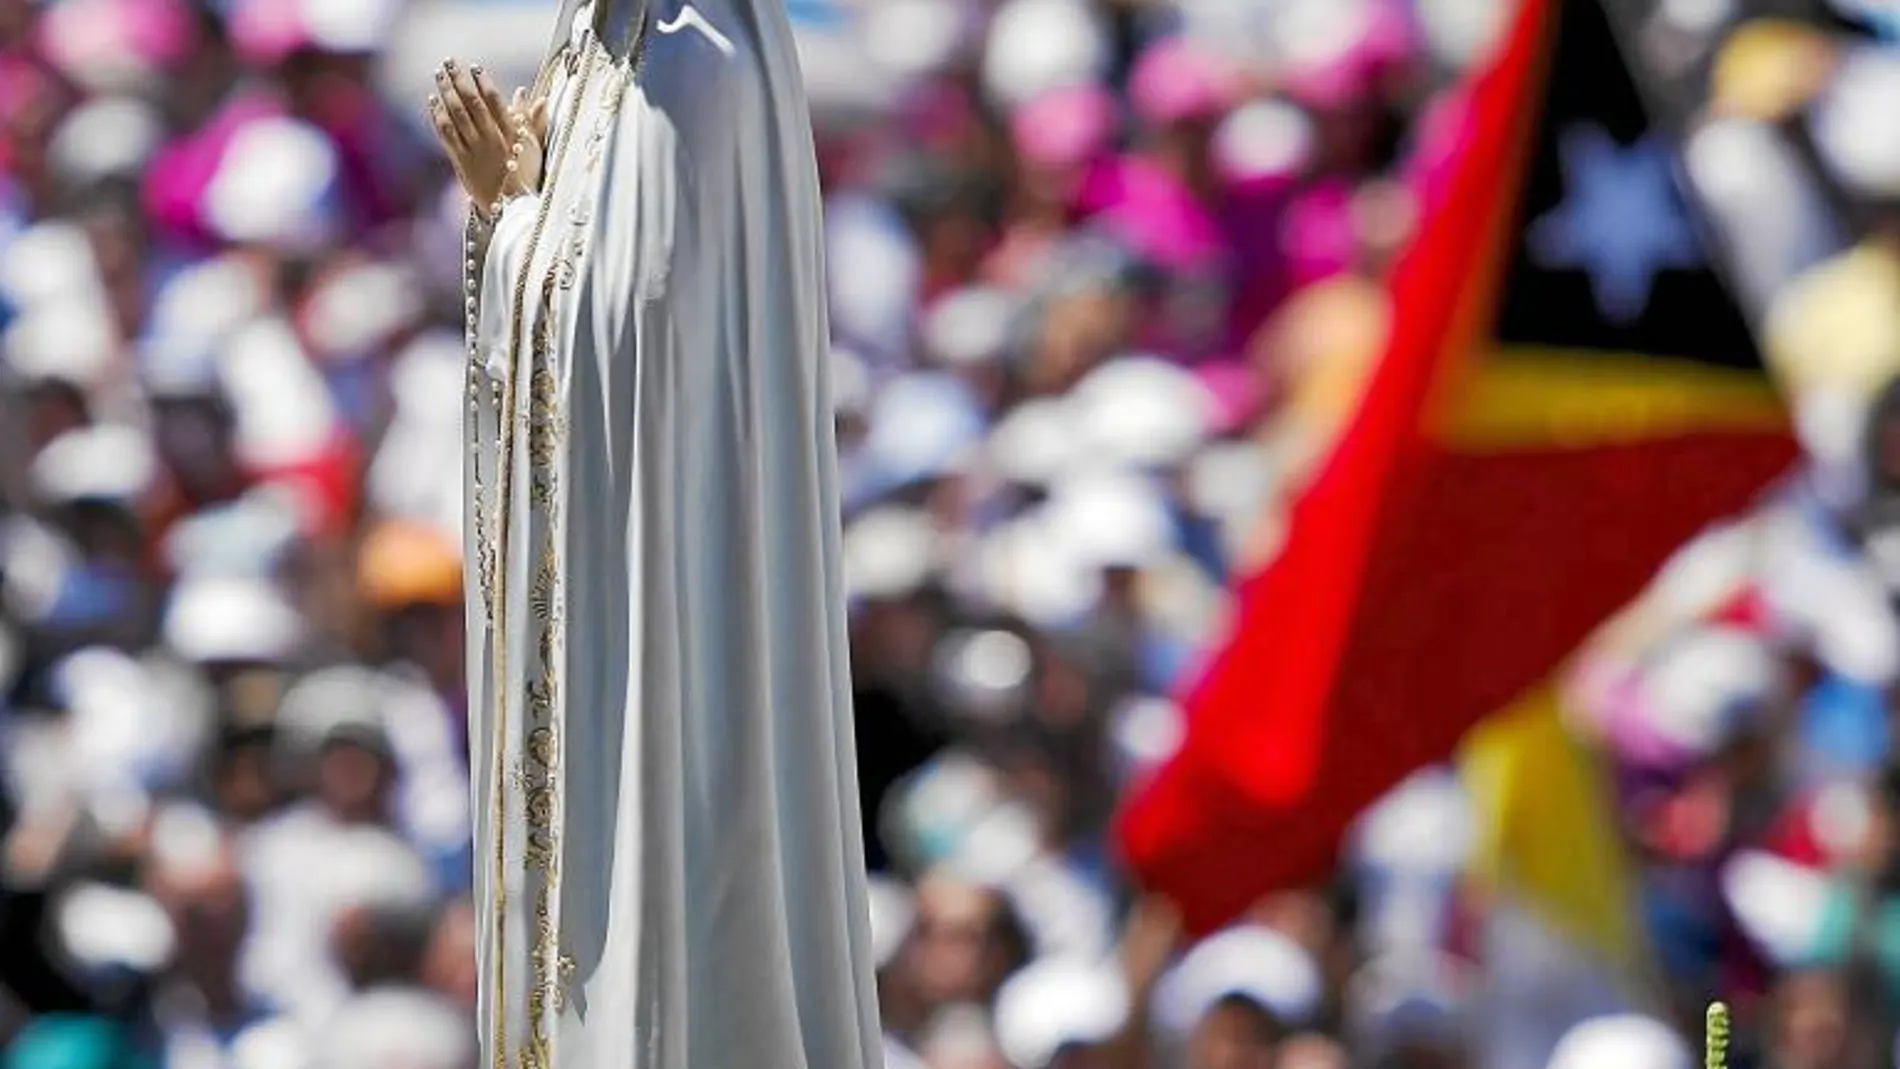 Miles de personas se dieron cita ayer y anteayer en el Santuario de Fátima para rezar a la Virgen, con motivo de las apariciones que tuvieron lugar en 1917 a tres niños pastores